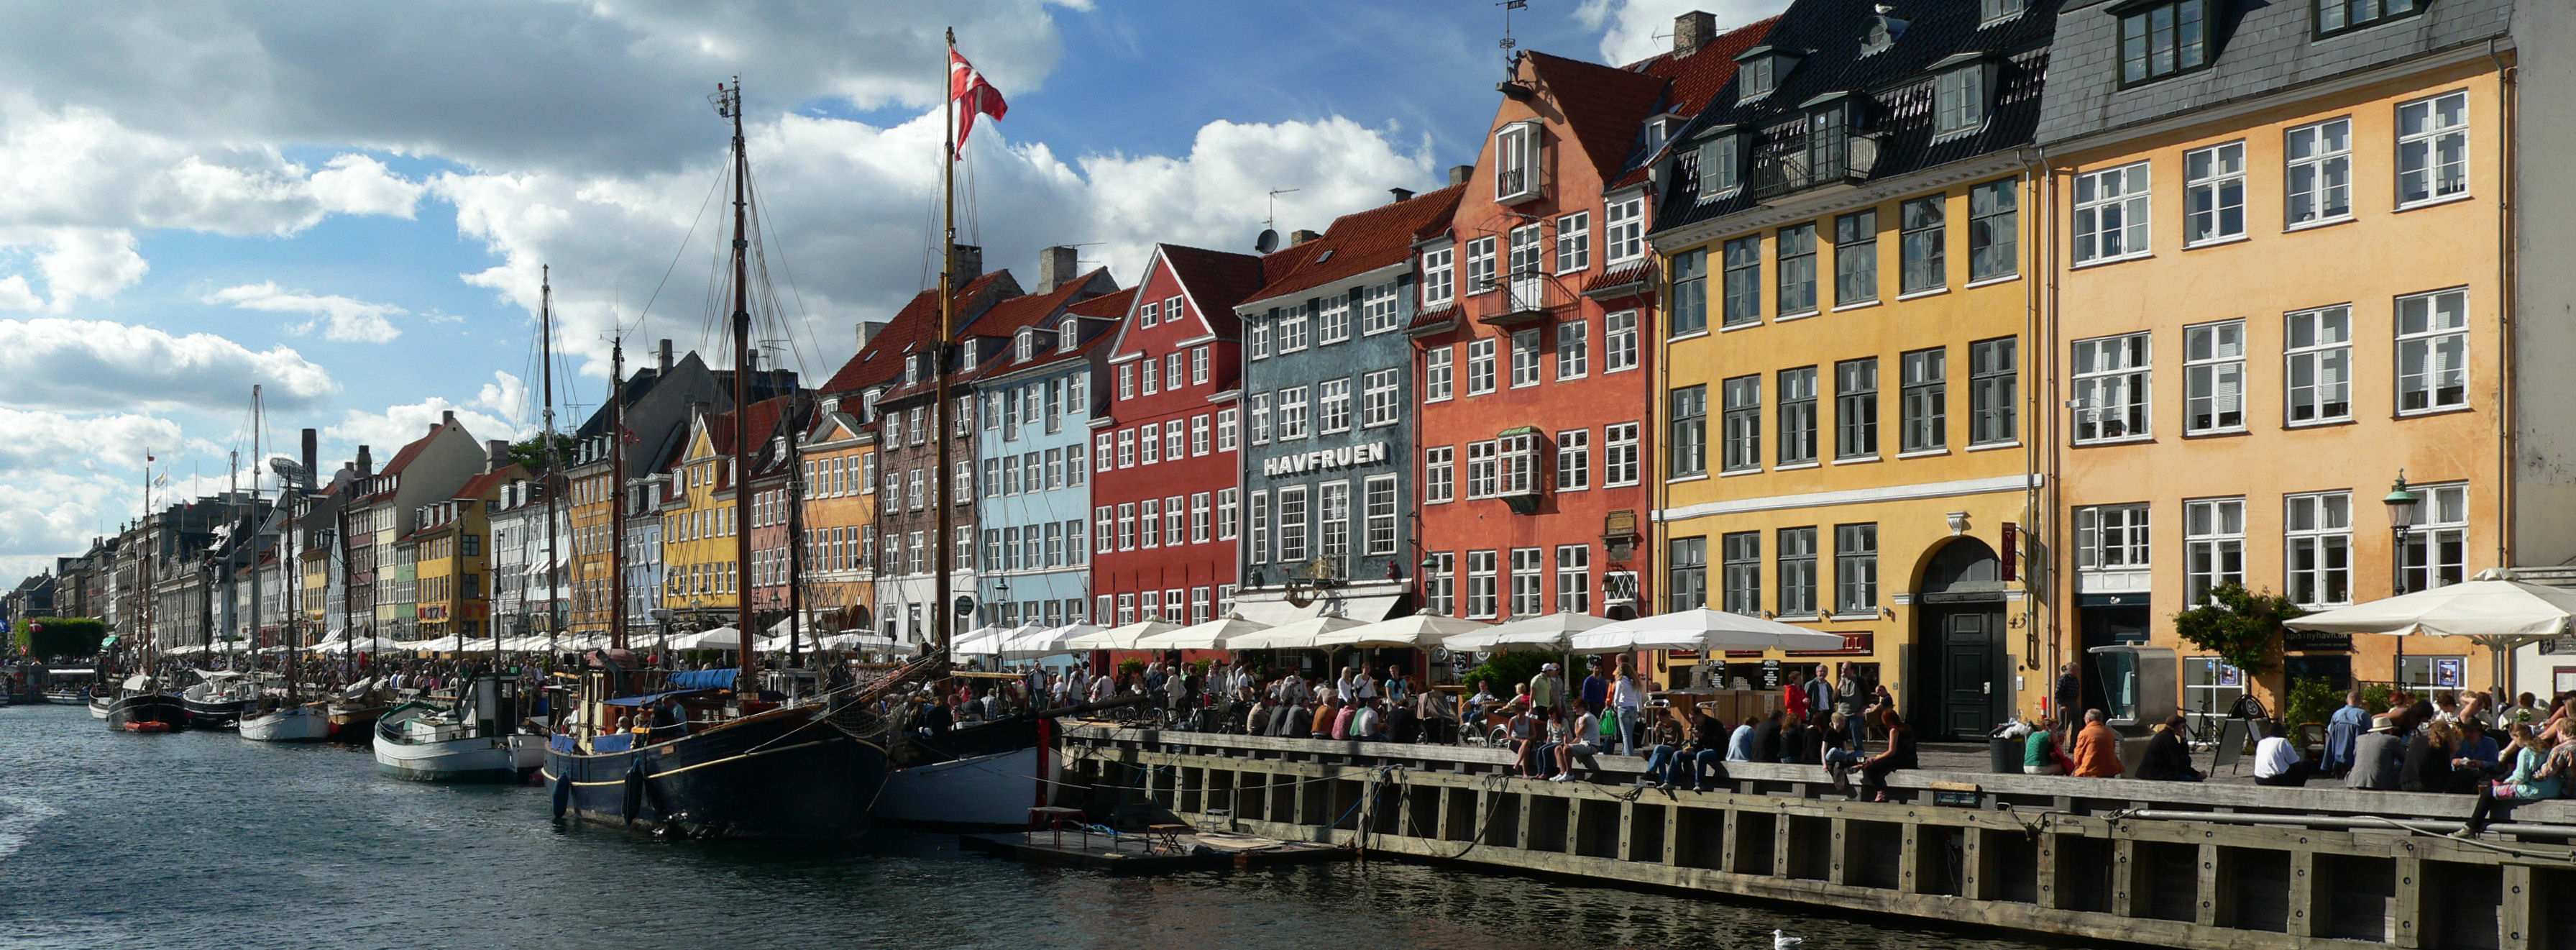 Photo of Nyhavn